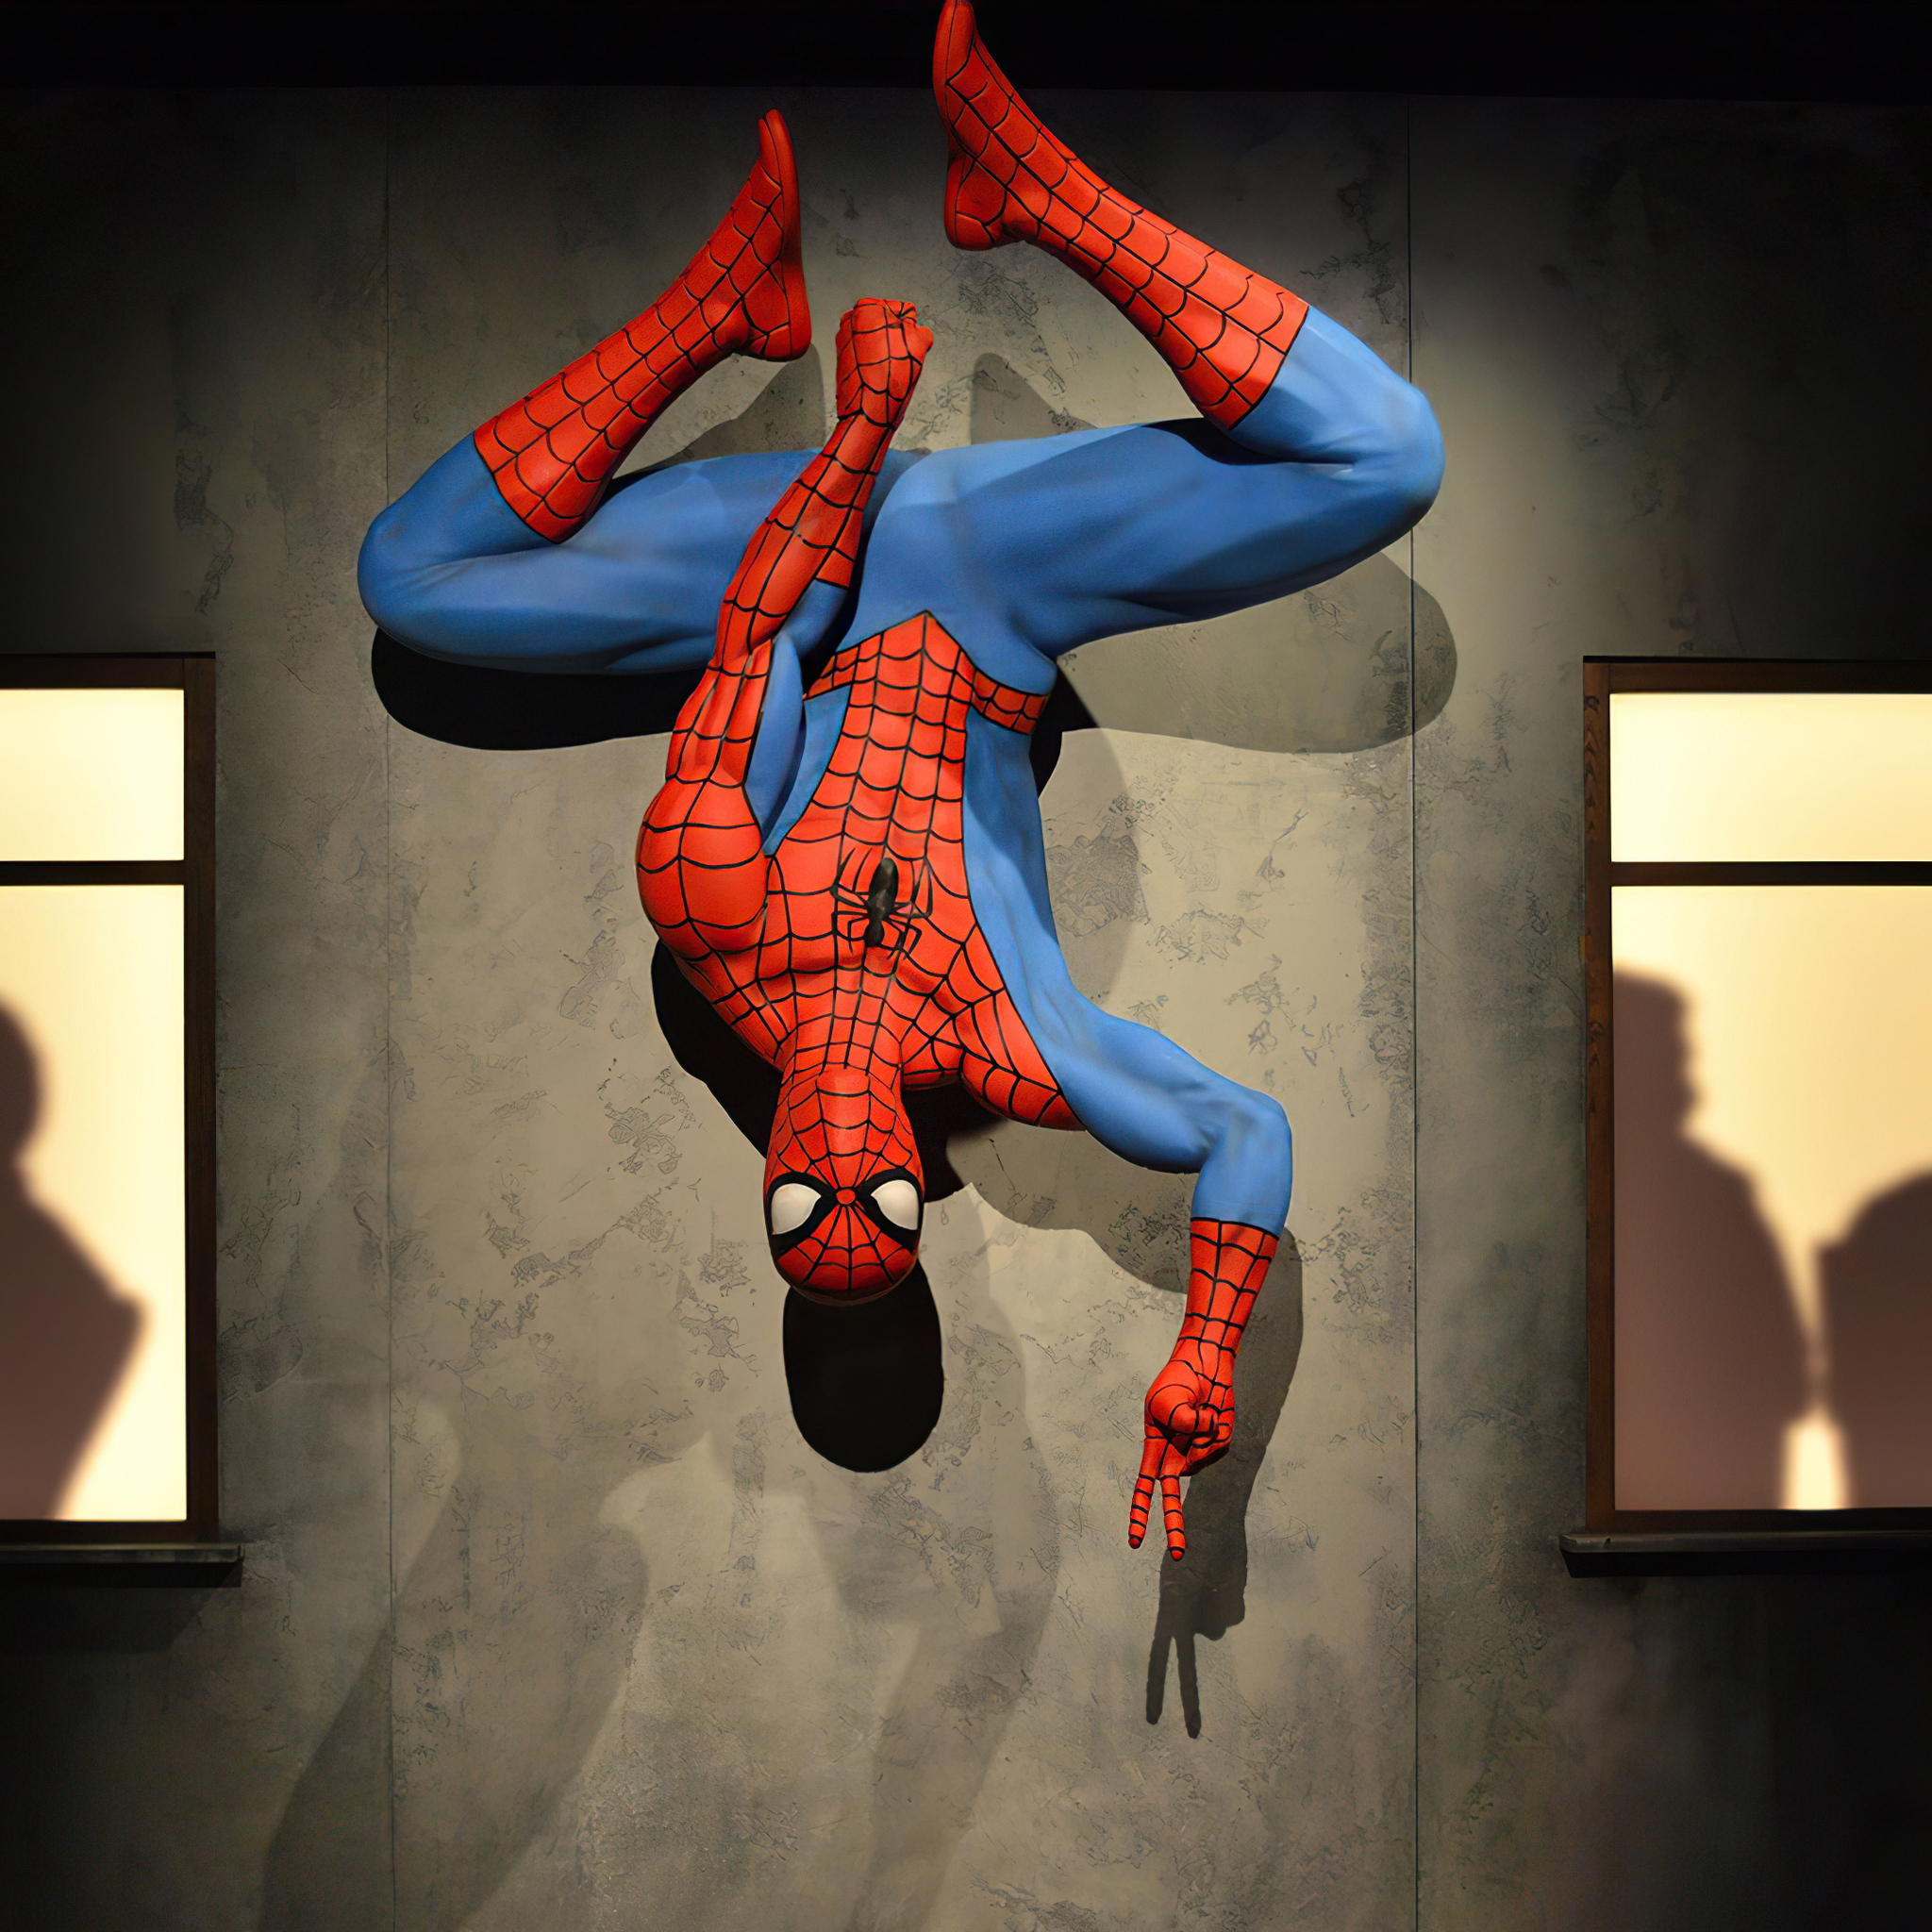 Spiderman hanging upside down 💖 Spider-Man Hanging Upside-Do